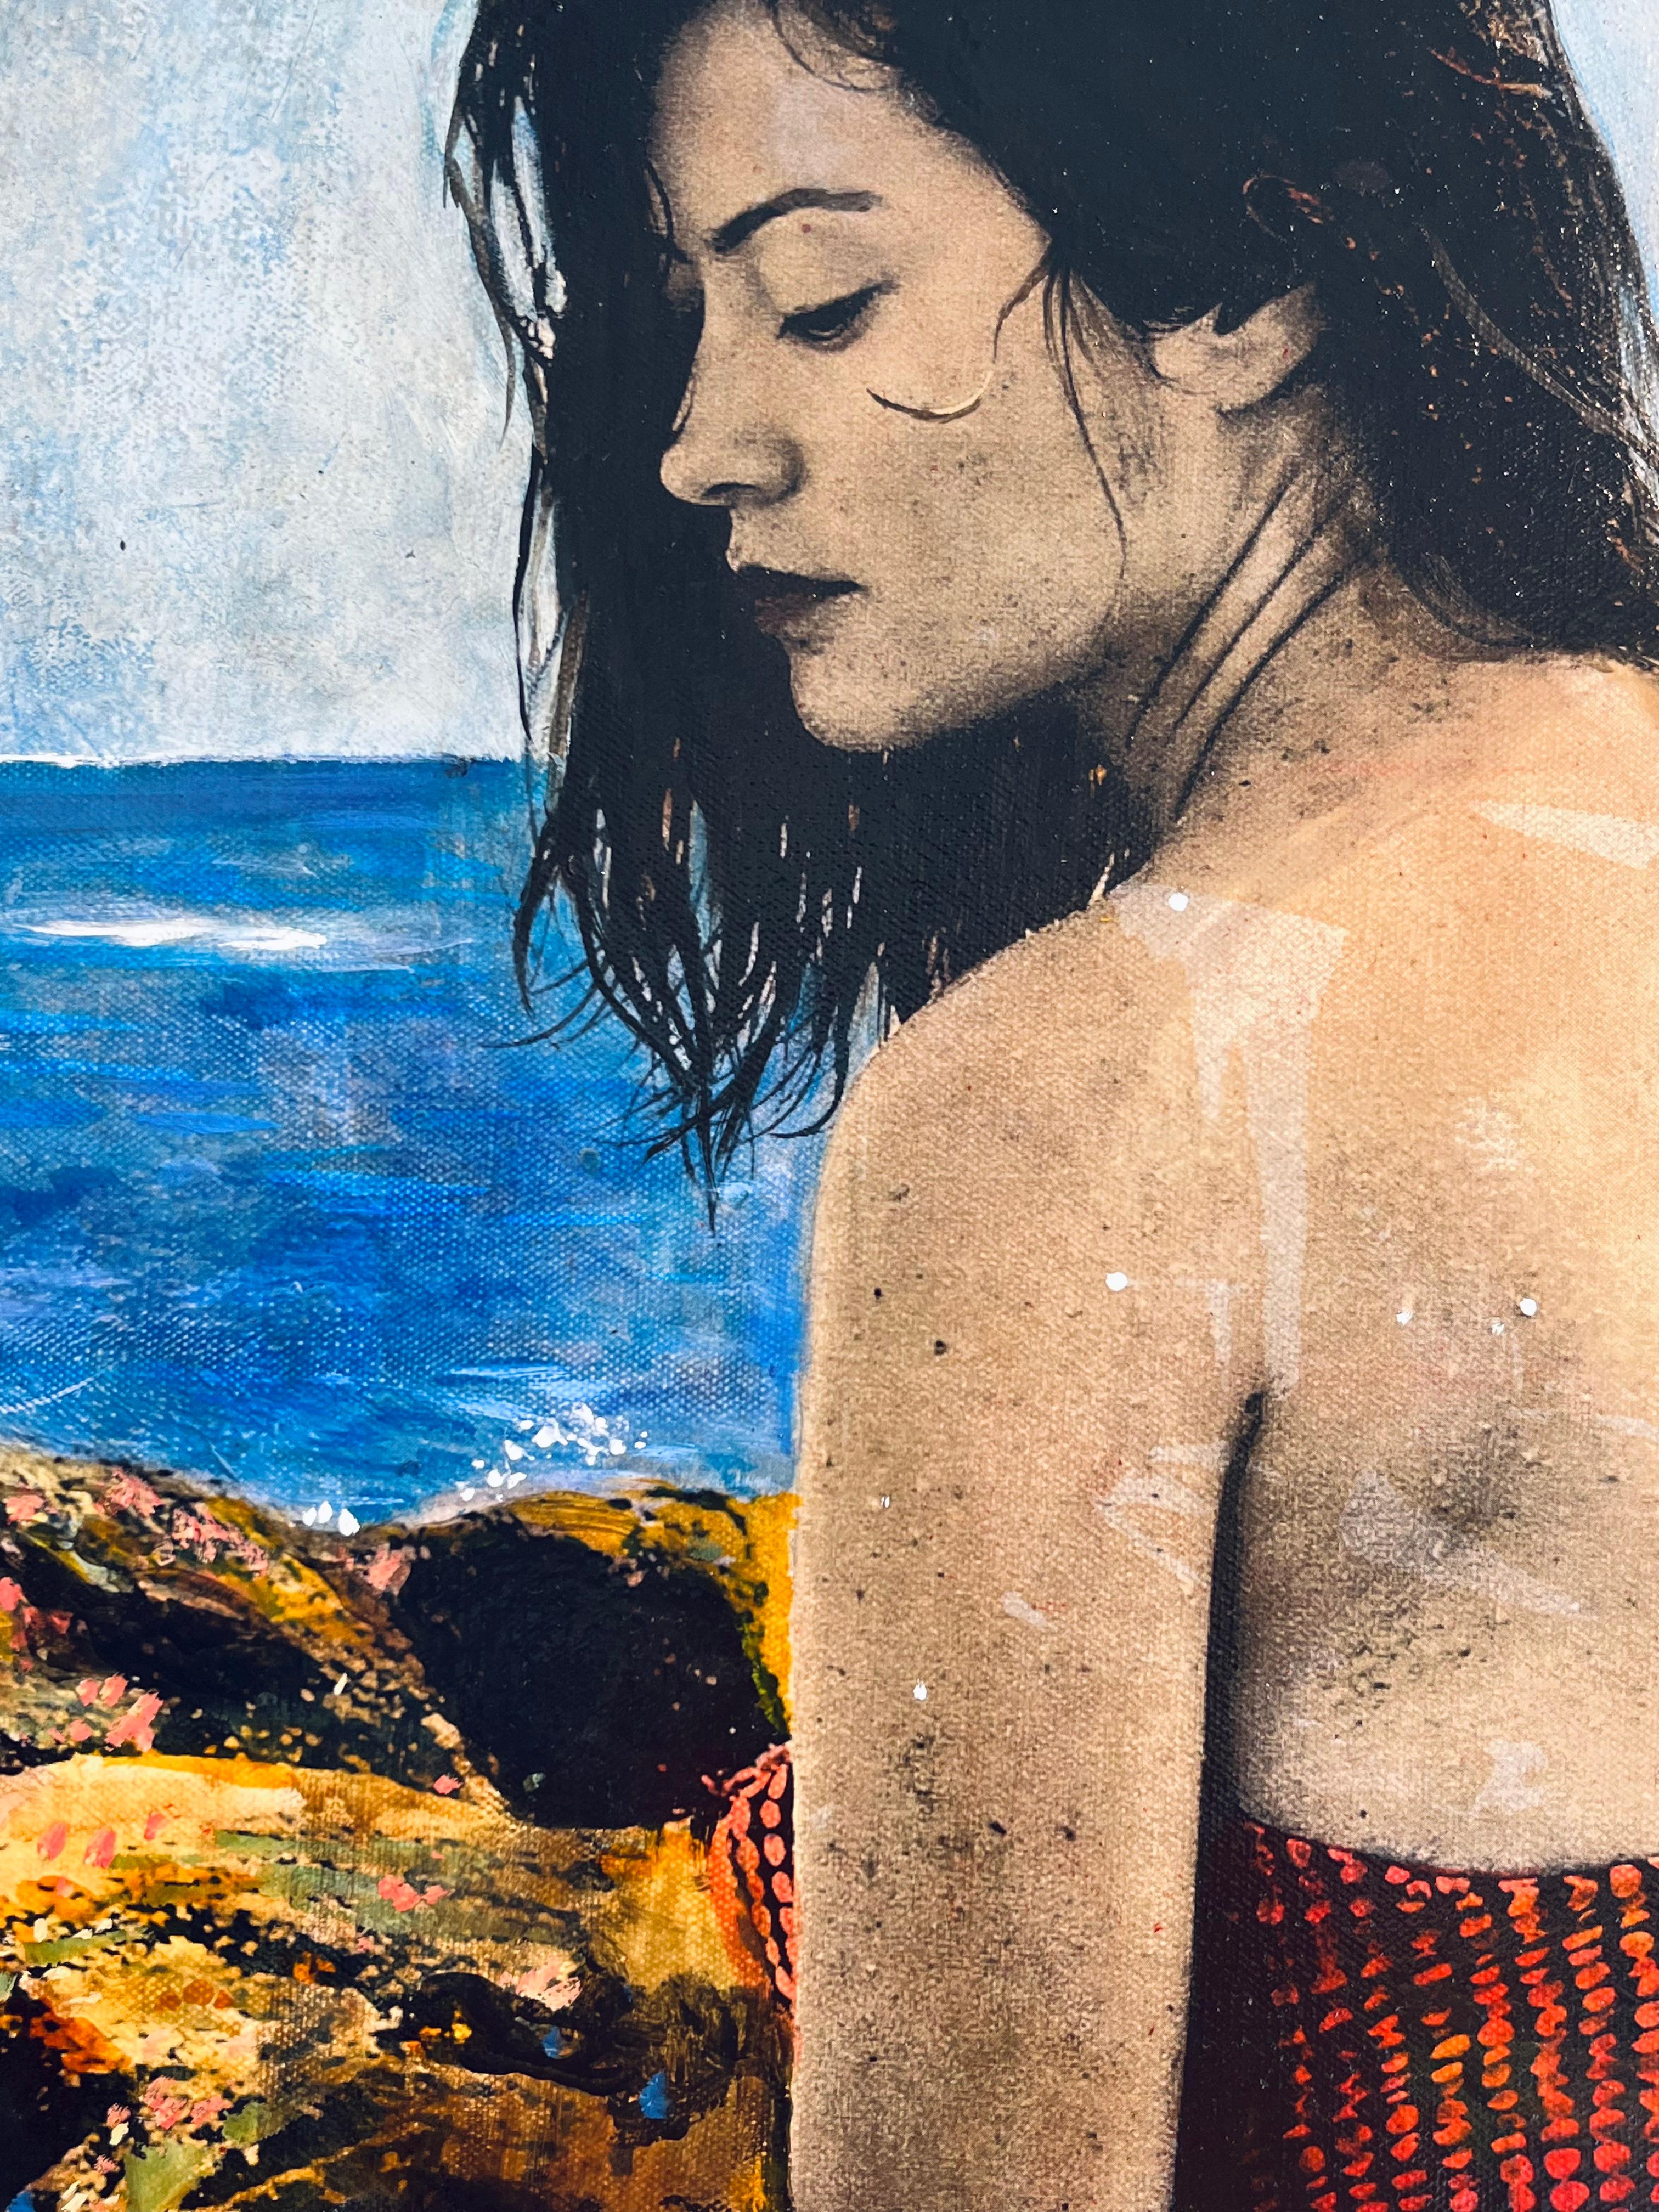 Sirene-originale moderne weibliche figurative-landschaftliche Malerei-zeitgenössisches Kunstwerk (Schwarz), Landscape Painting, von Ayline Olukman